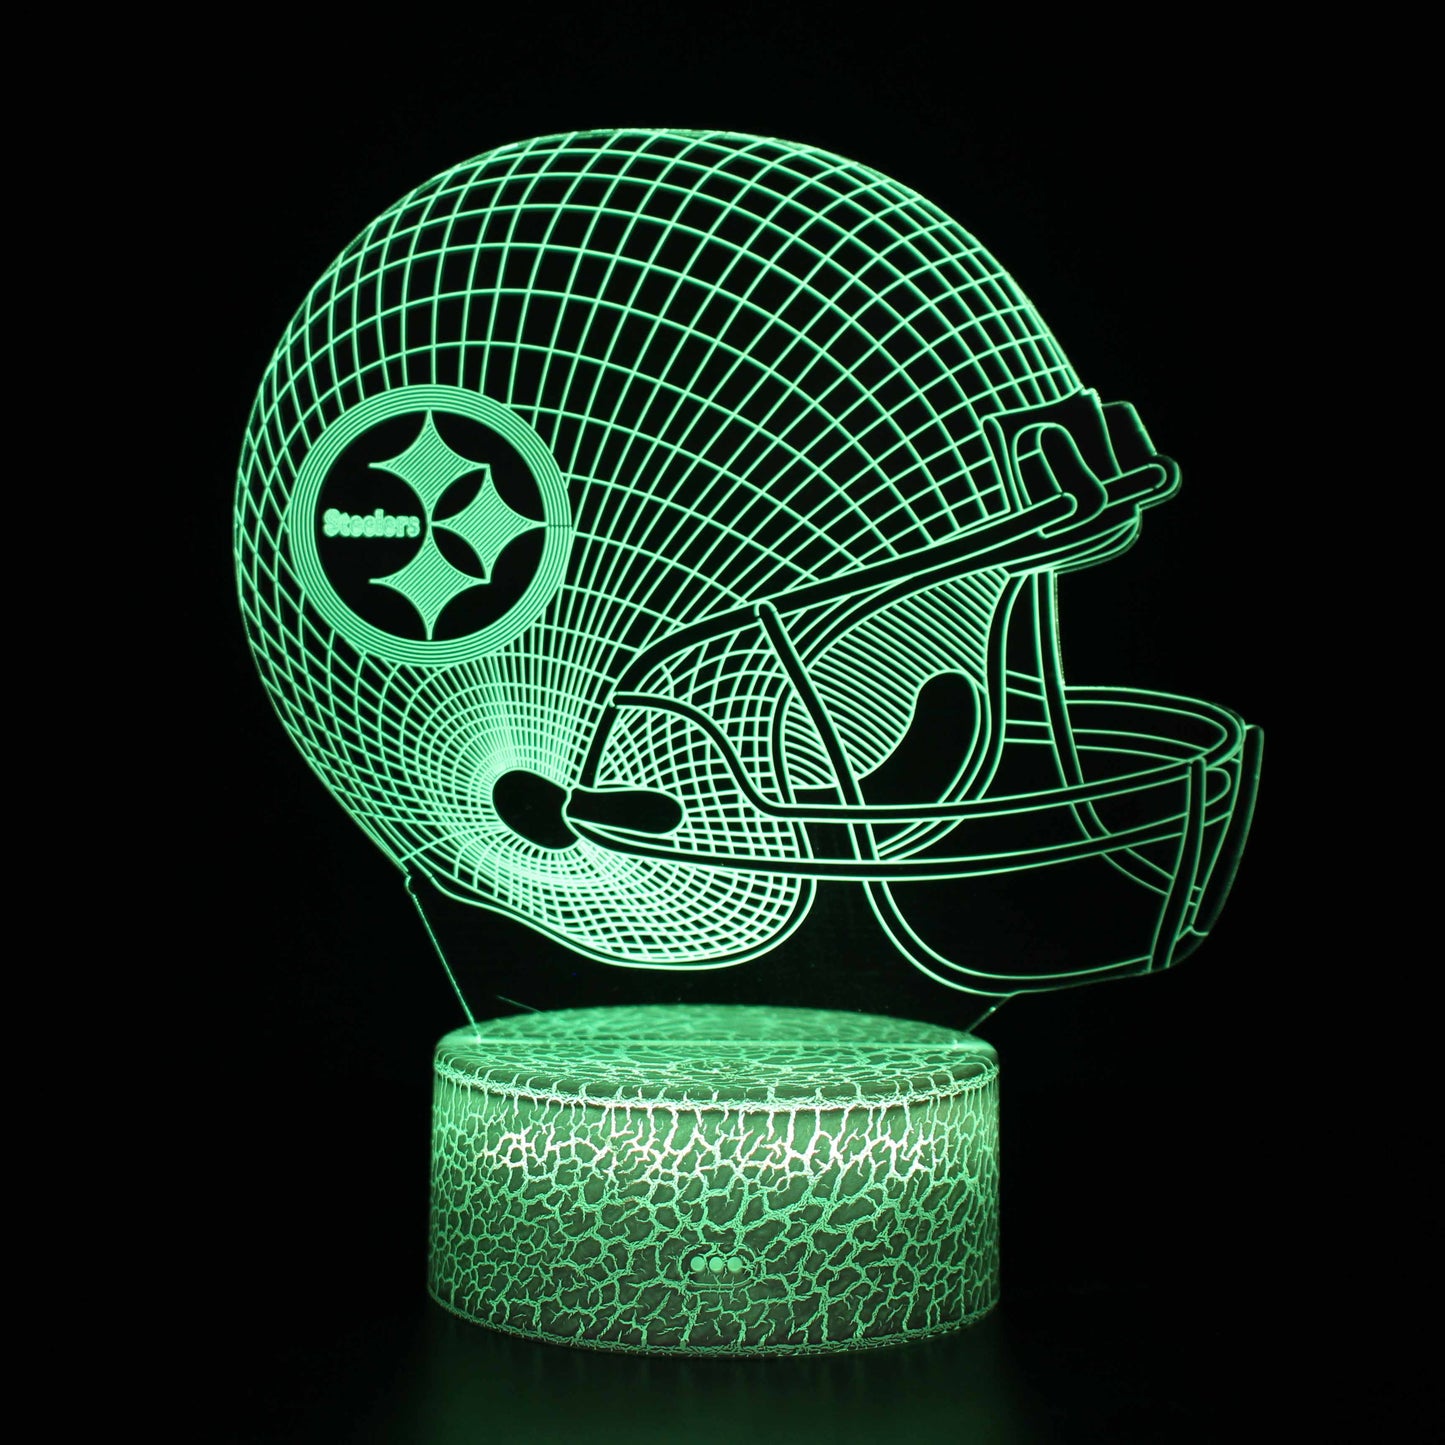 Pittsburgh Steelers NFL Football Helmet 3D Night Light